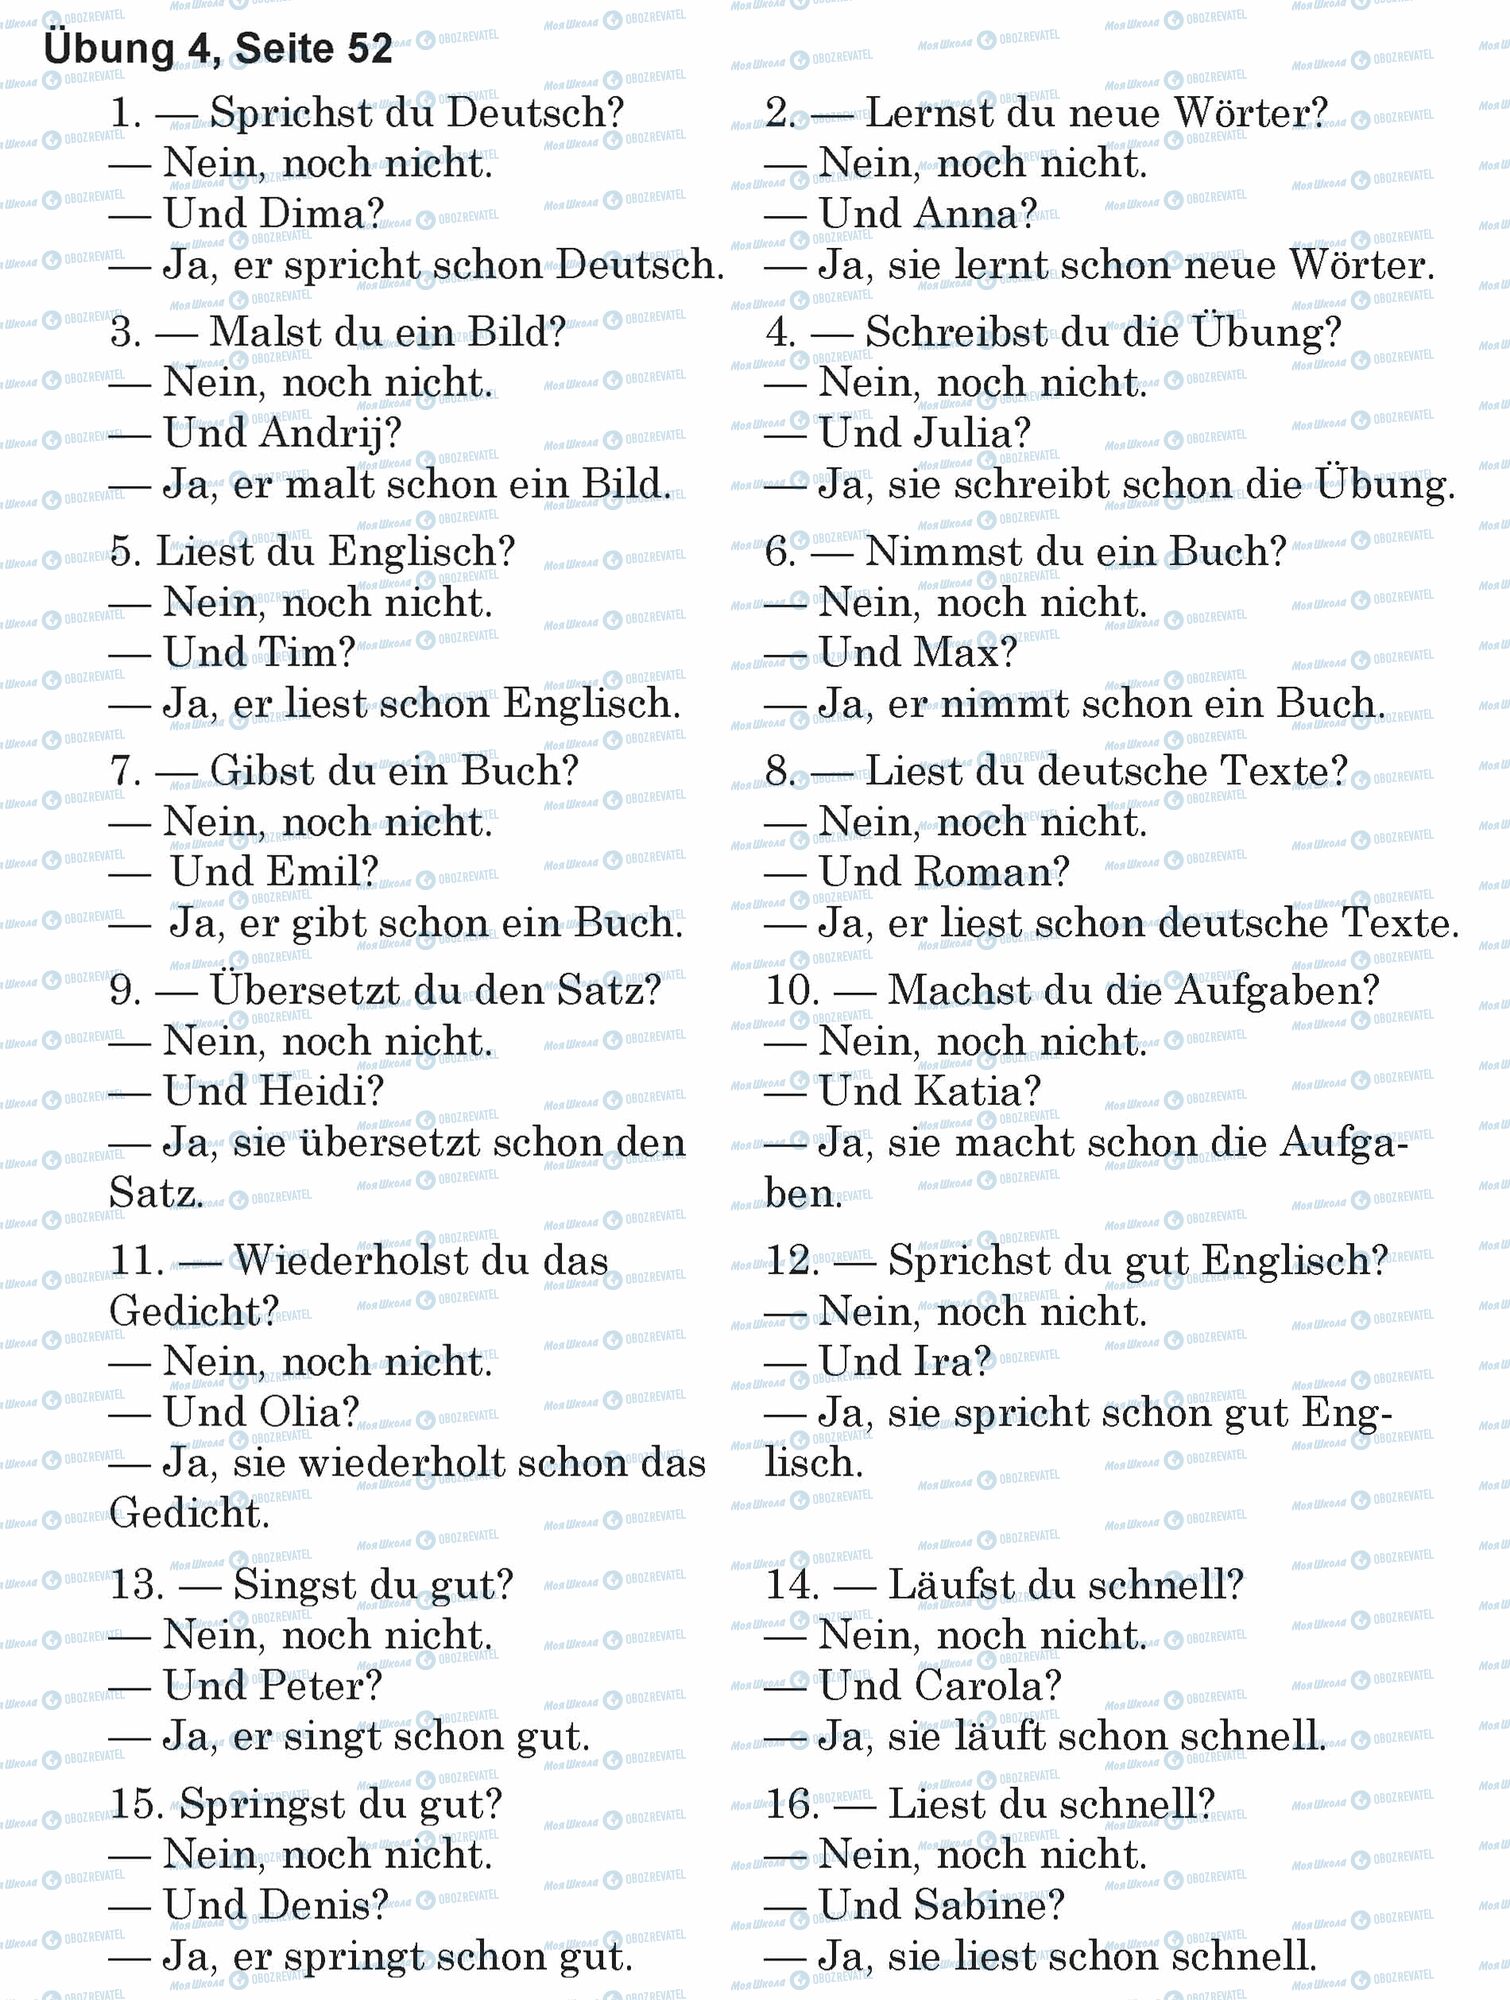 ГДЗ Німецька мова 5 клас сторінка Ubung 4, Seite 52